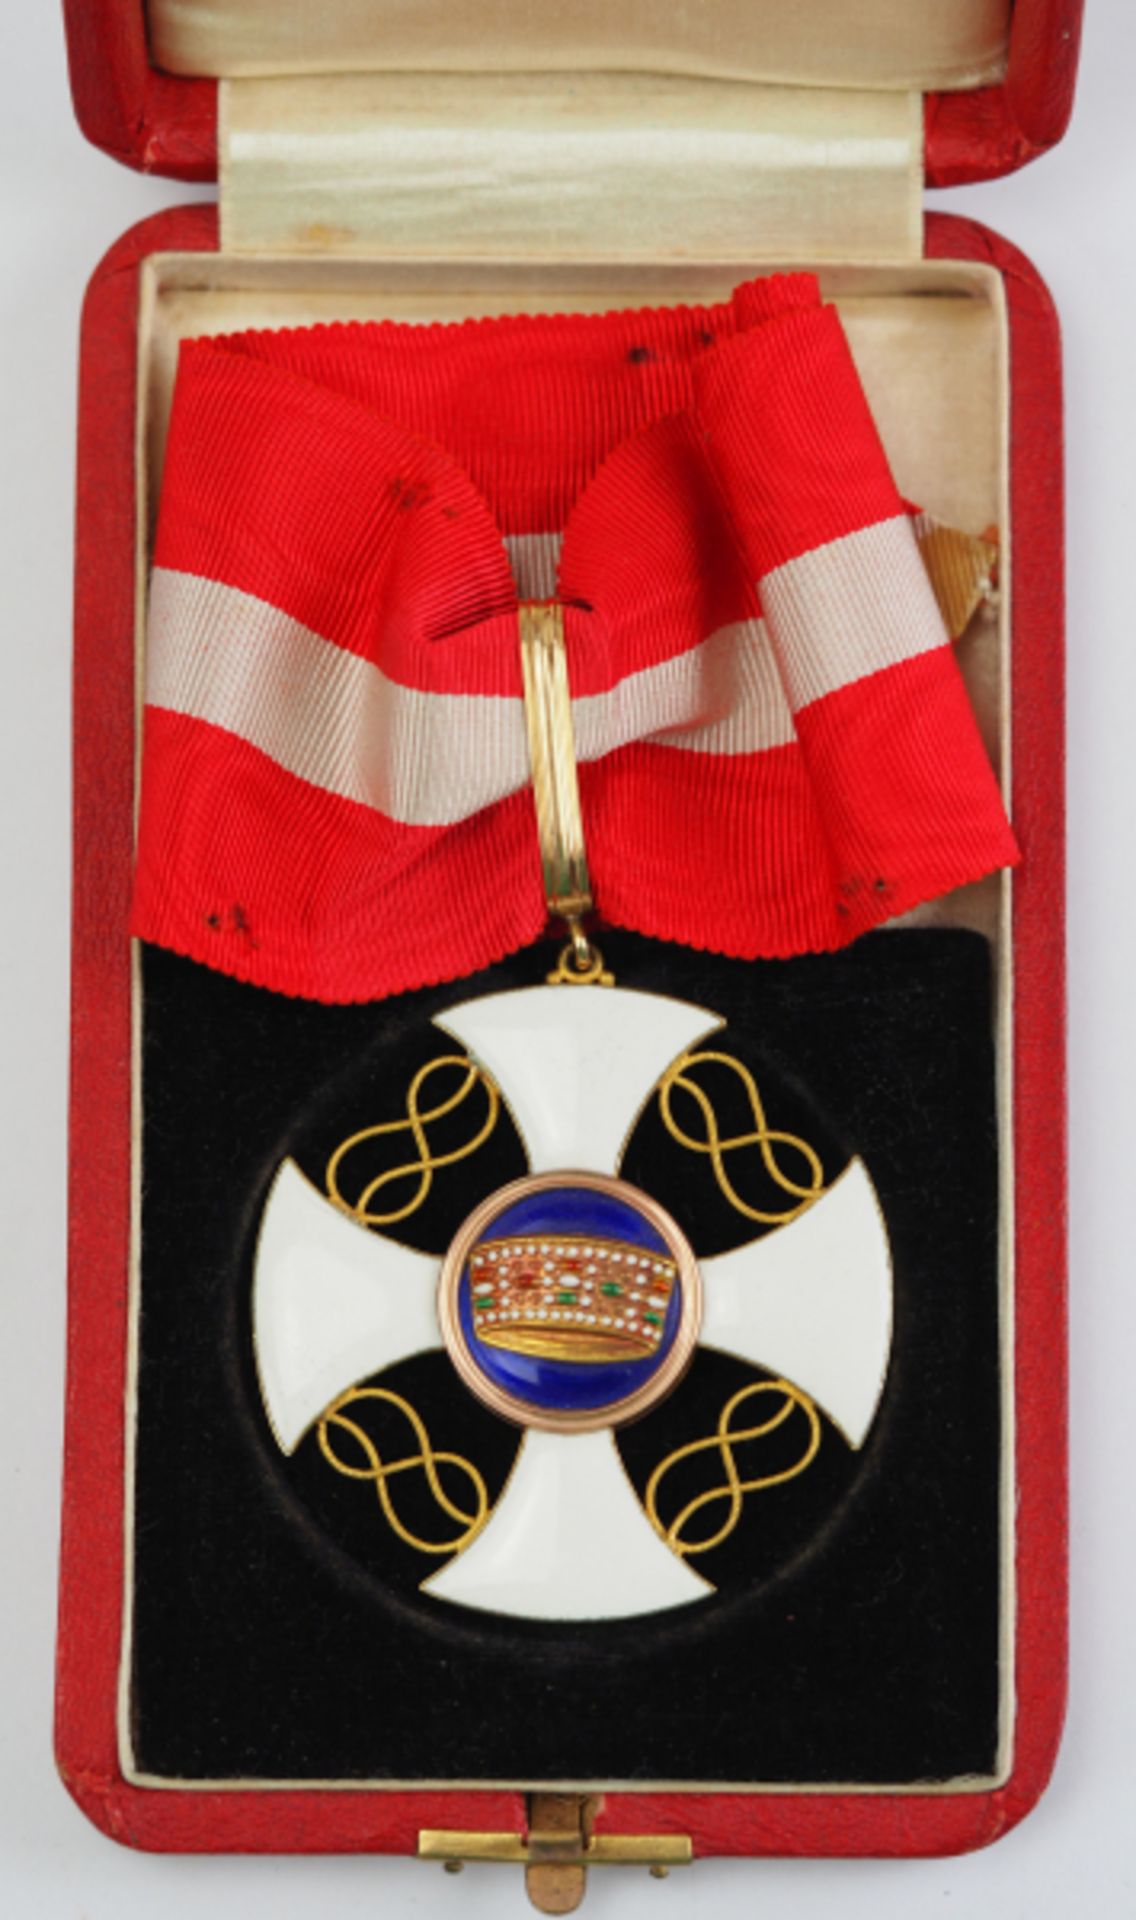 Italien: Orden der Krone von Italien, Komtur Kreuz, im Etui.Gold, teilweise emailliert, mehrteilig - Bild 2 aus 4